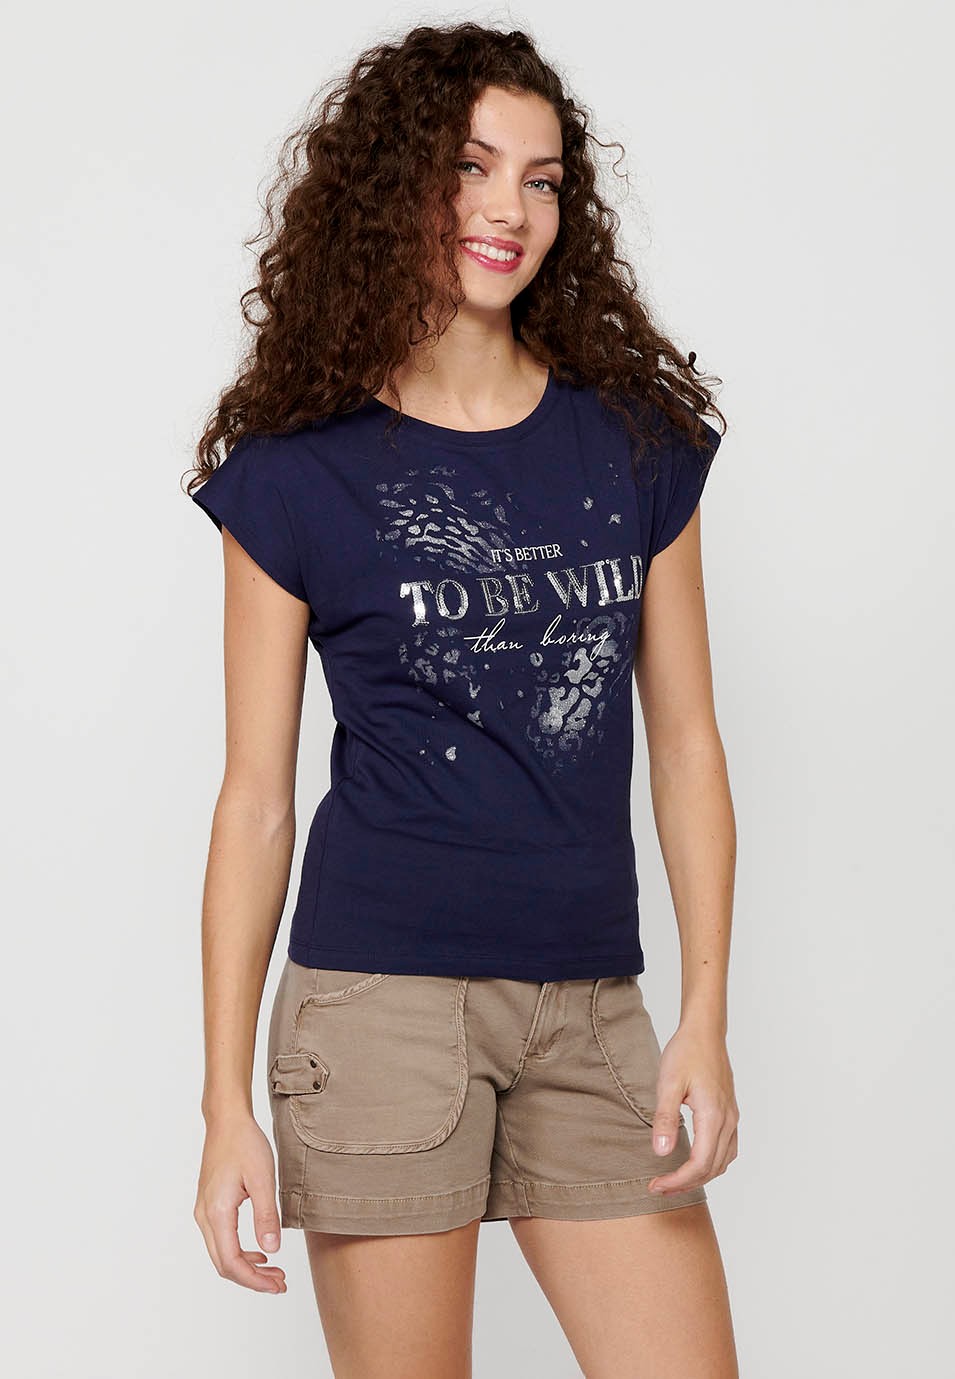 T-shirt à manches courtes avec col rond et imprimé sur le devant de couleur marine pour femme